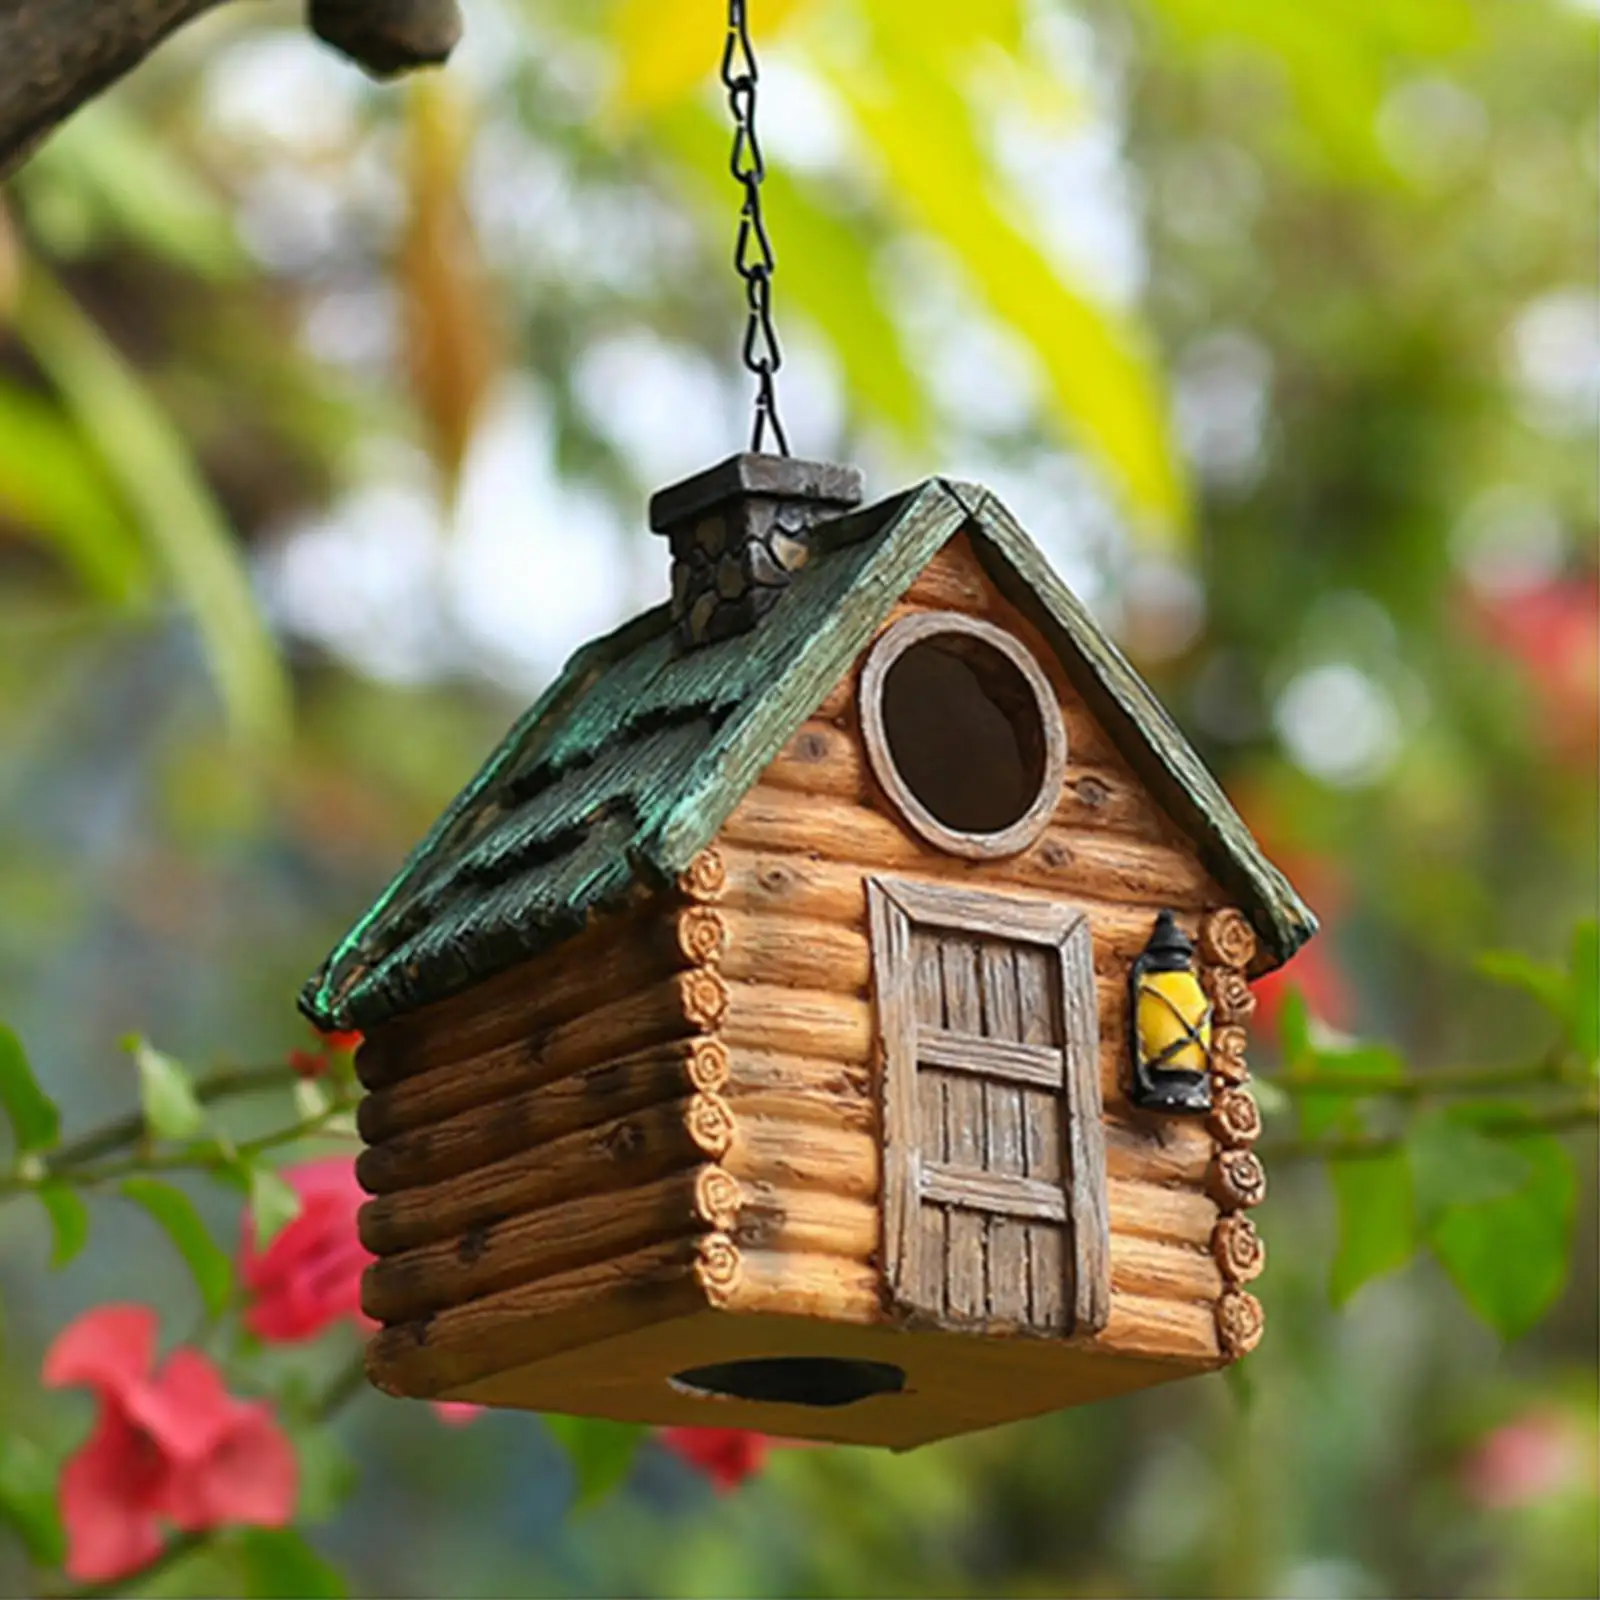 Hanging Birdhouses Hummingbird Nest Shelter for Cardinal Bluebird Birds Hut Outdoor Bird Nest for Window Yard Patio Garden Lawn